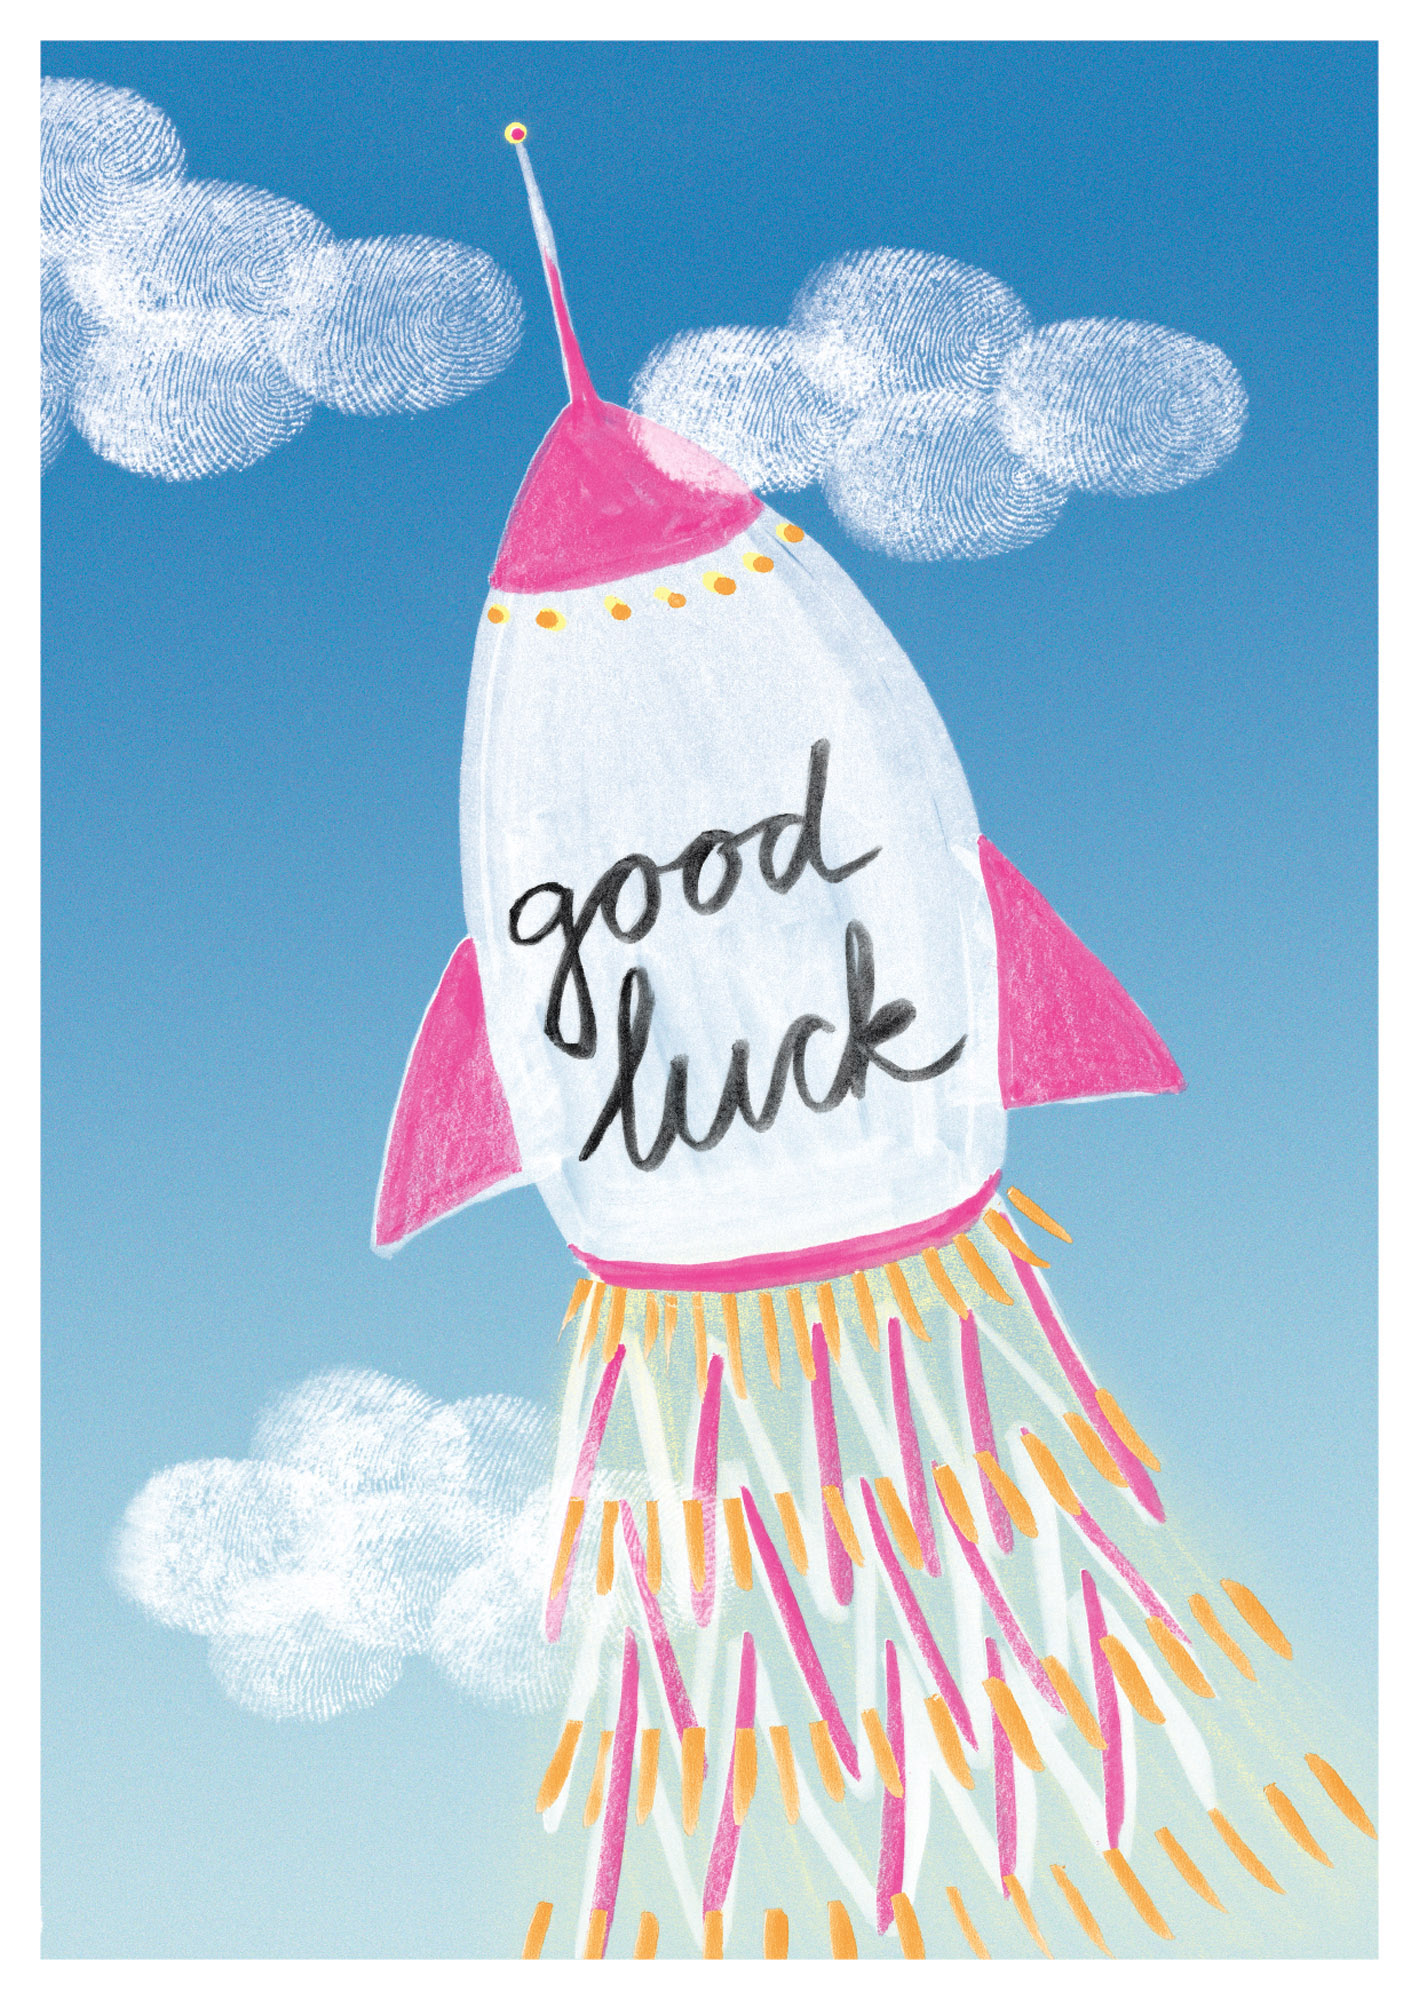 Postkarte - schönegrüsse - good luck Rakete